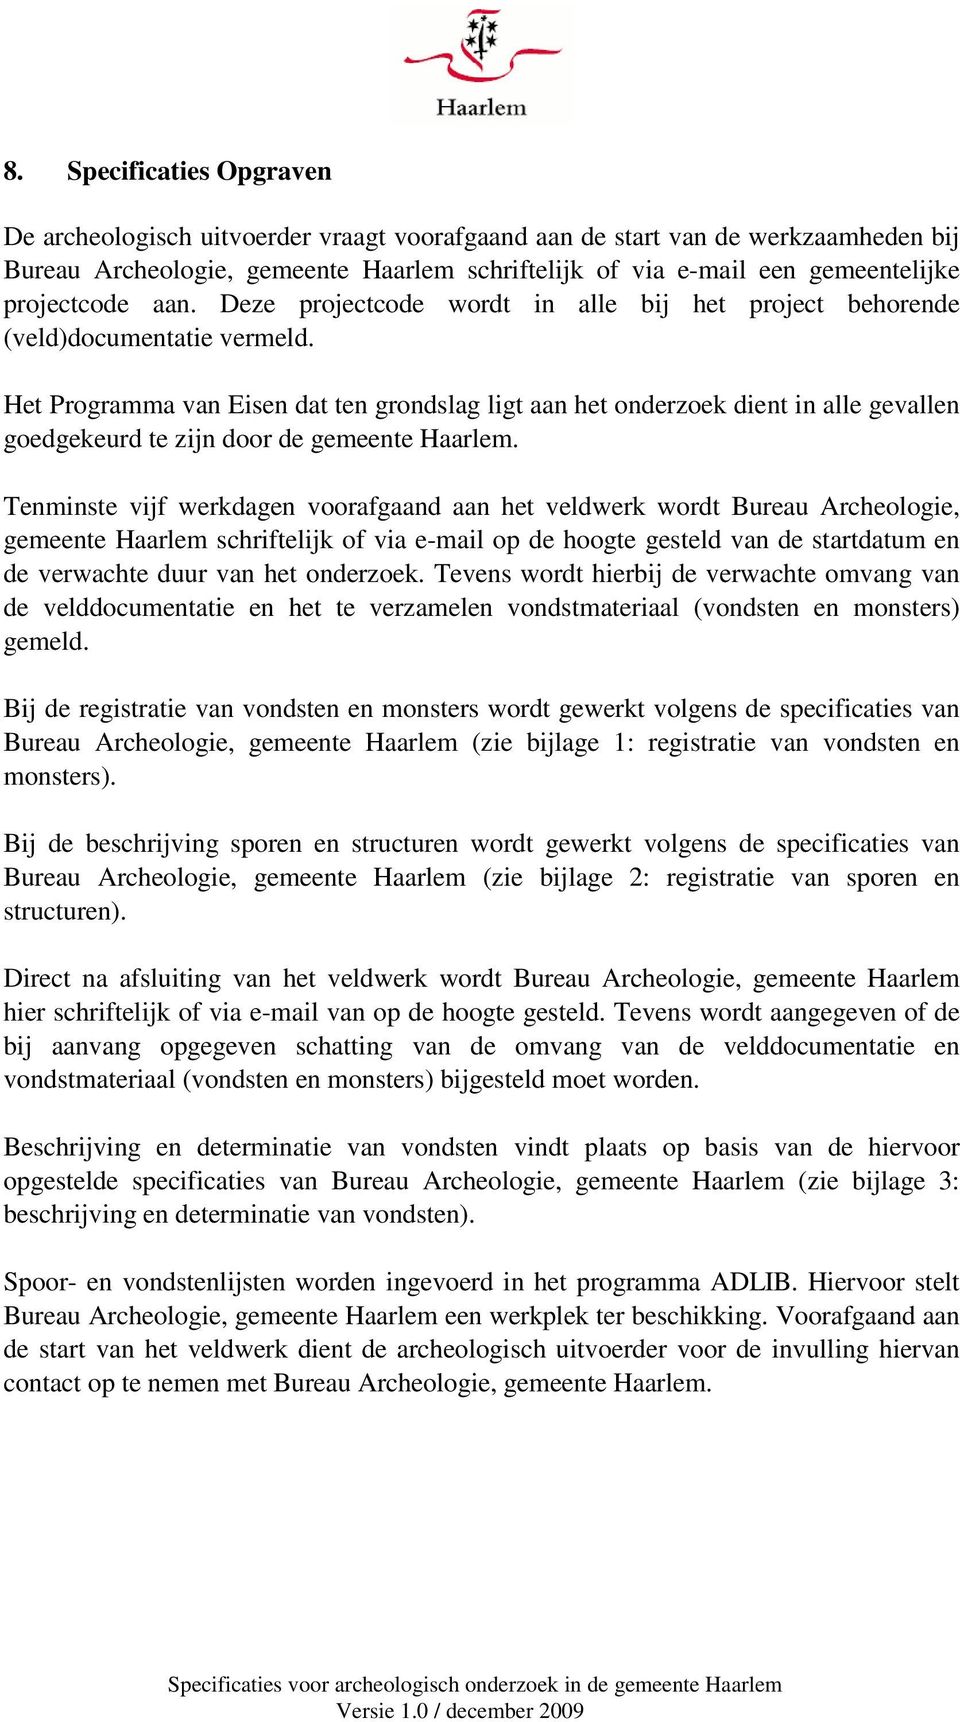 Het Programma van Eisen dat ten grondslag ligt aan het onderzoek dient in alle gevallen goedgekeurd te zijn door de gemeente Haarlem.